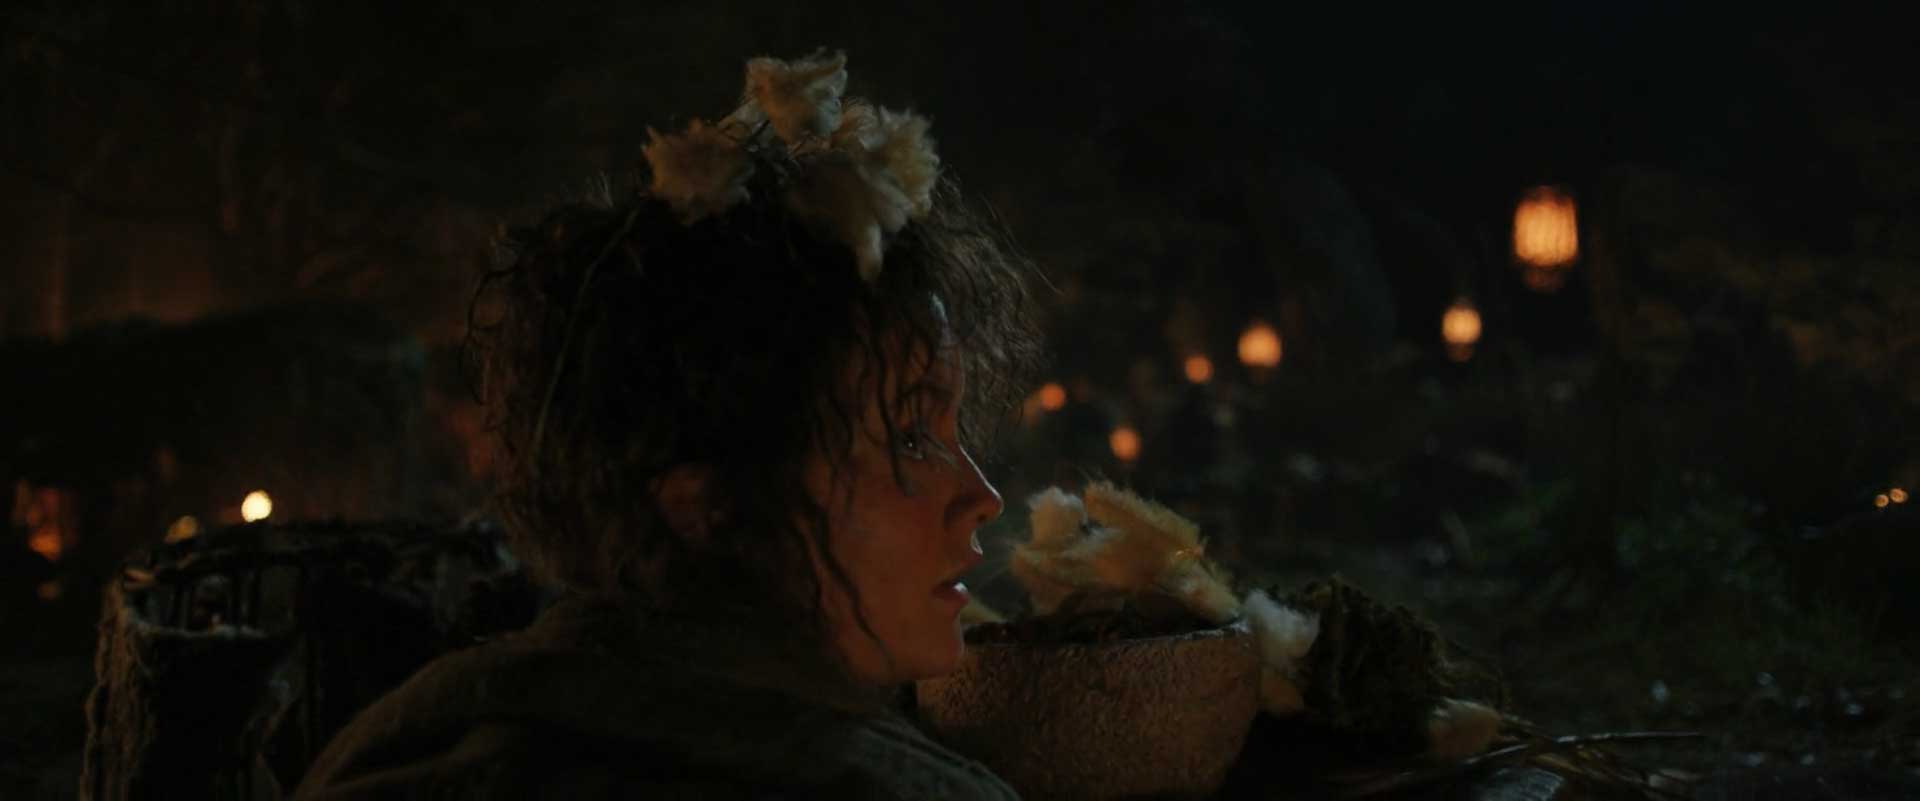 النور «نوری» برندیفوت با بازی مارکلا کاونا در سریال The Lord of the Rings: The Rings of Power (قسمت سوم: آدار)